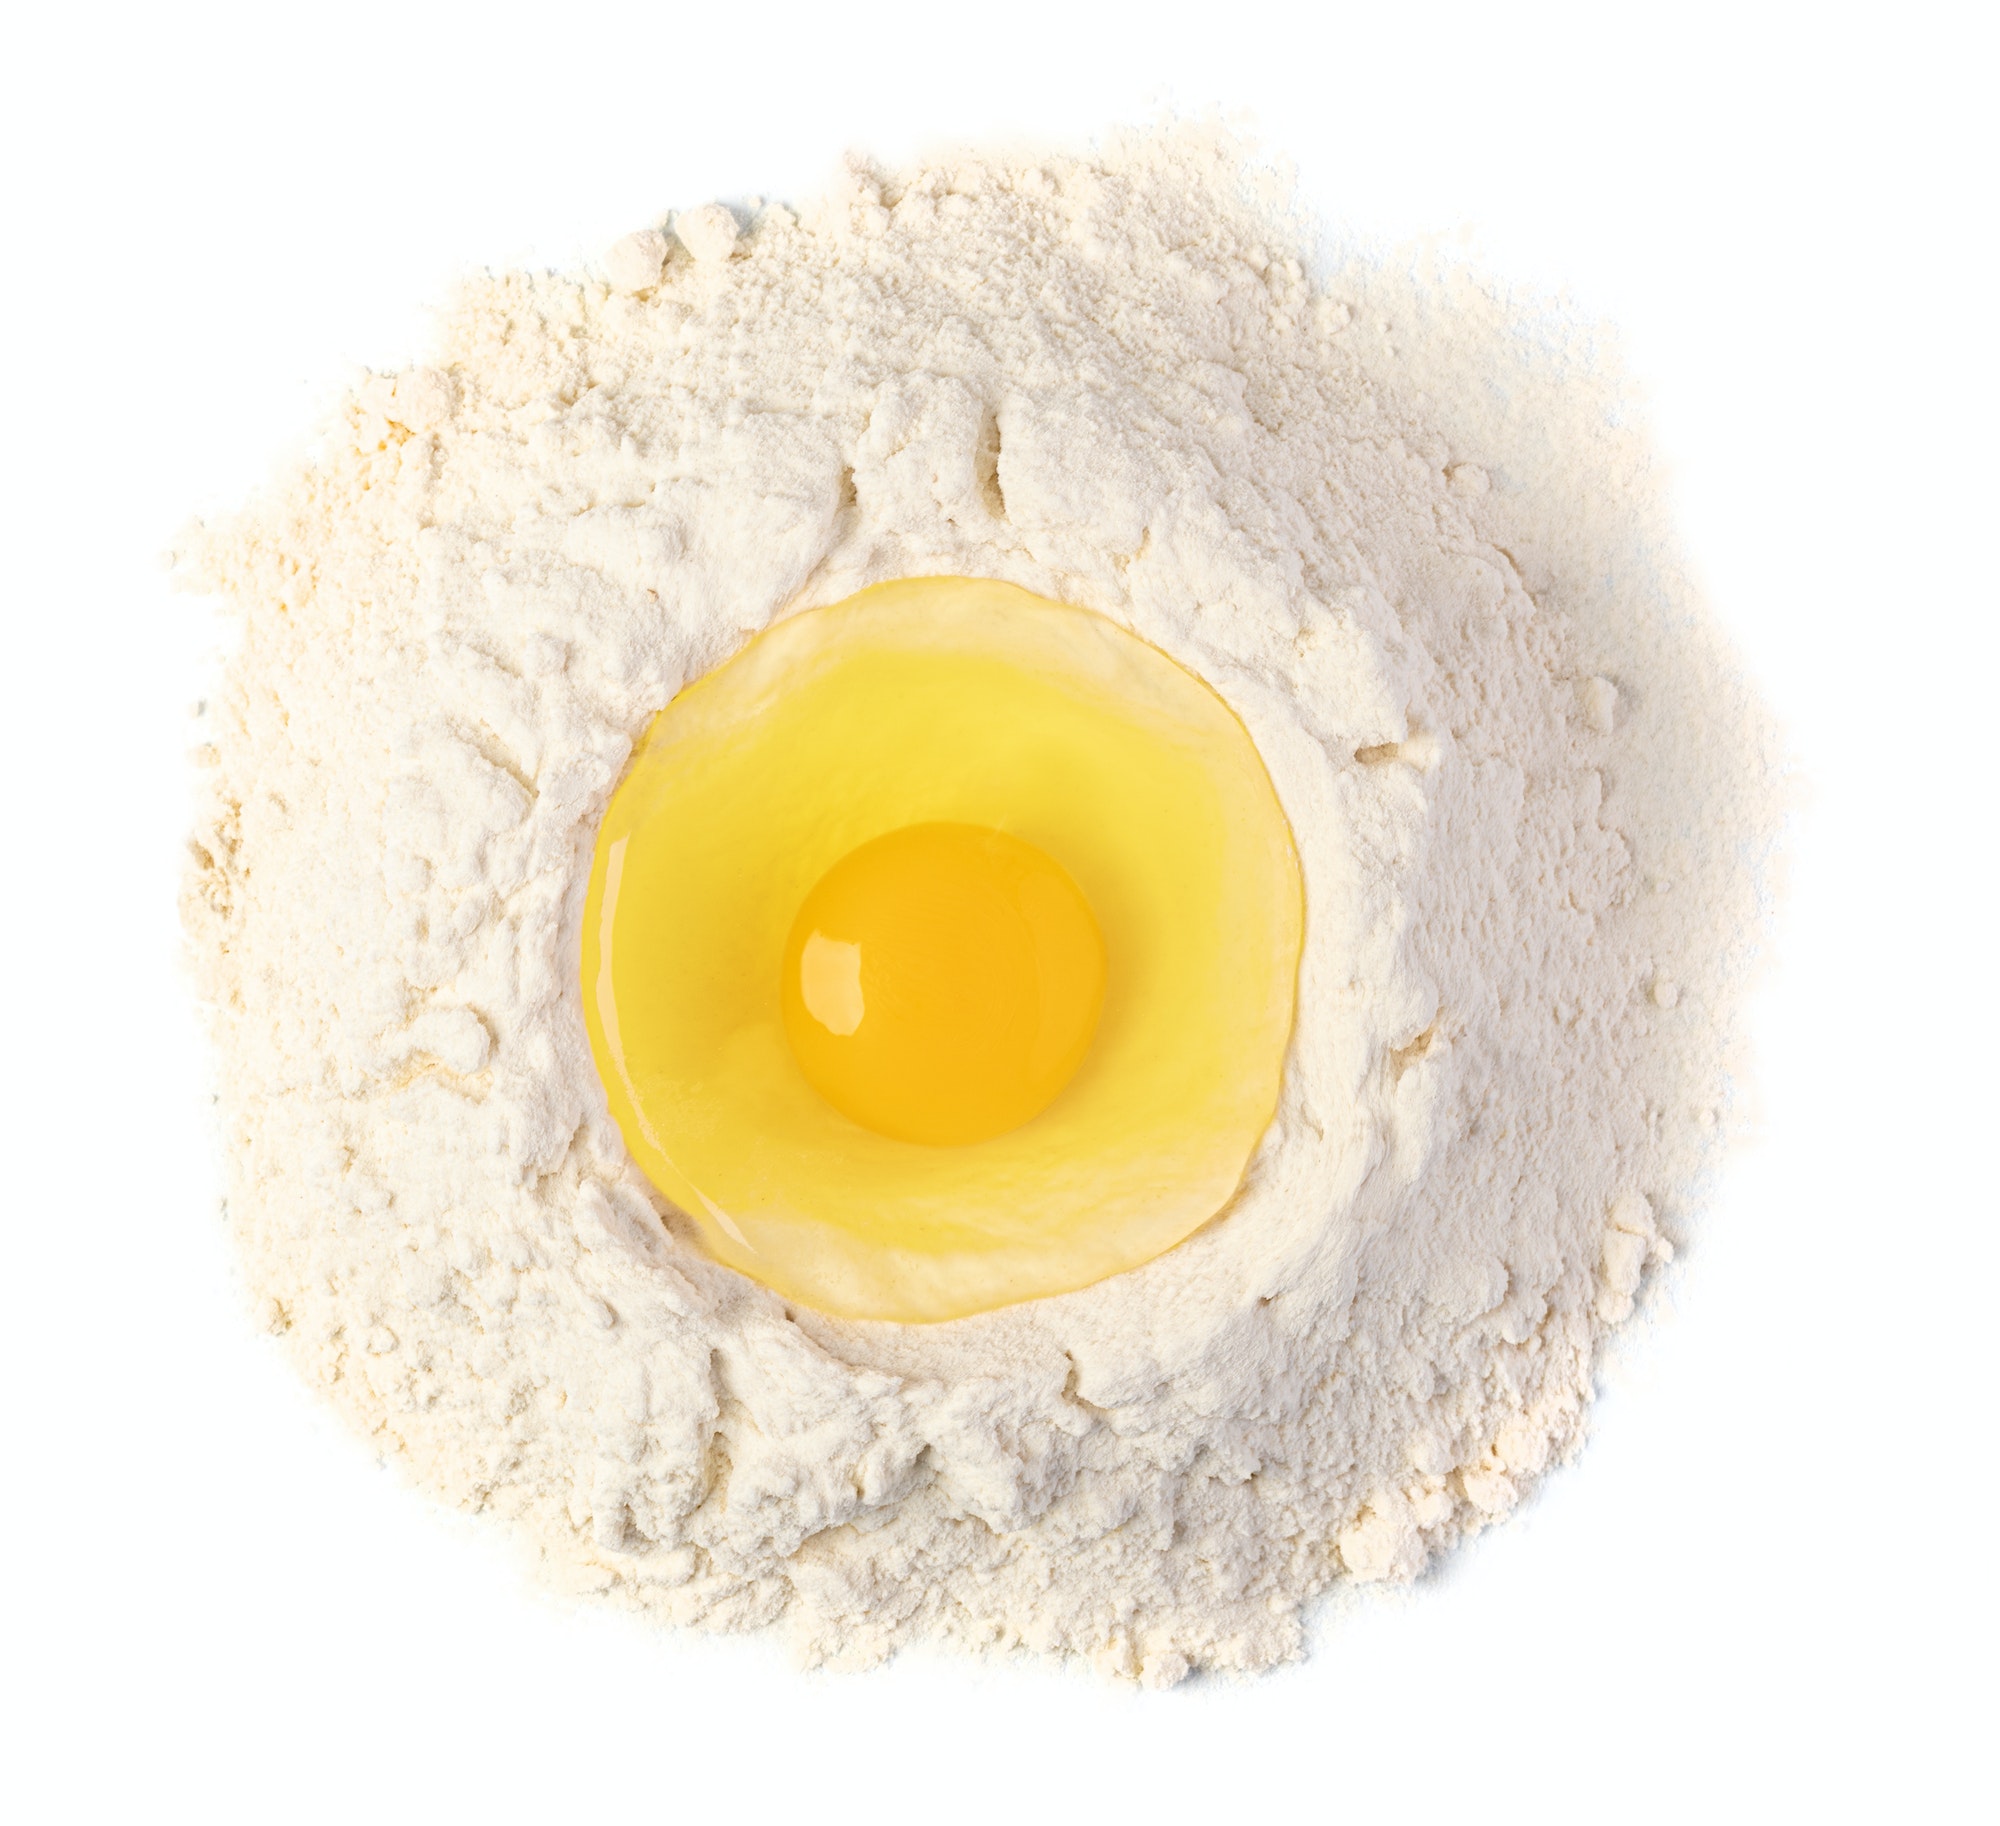 Huevo roto sobre harina